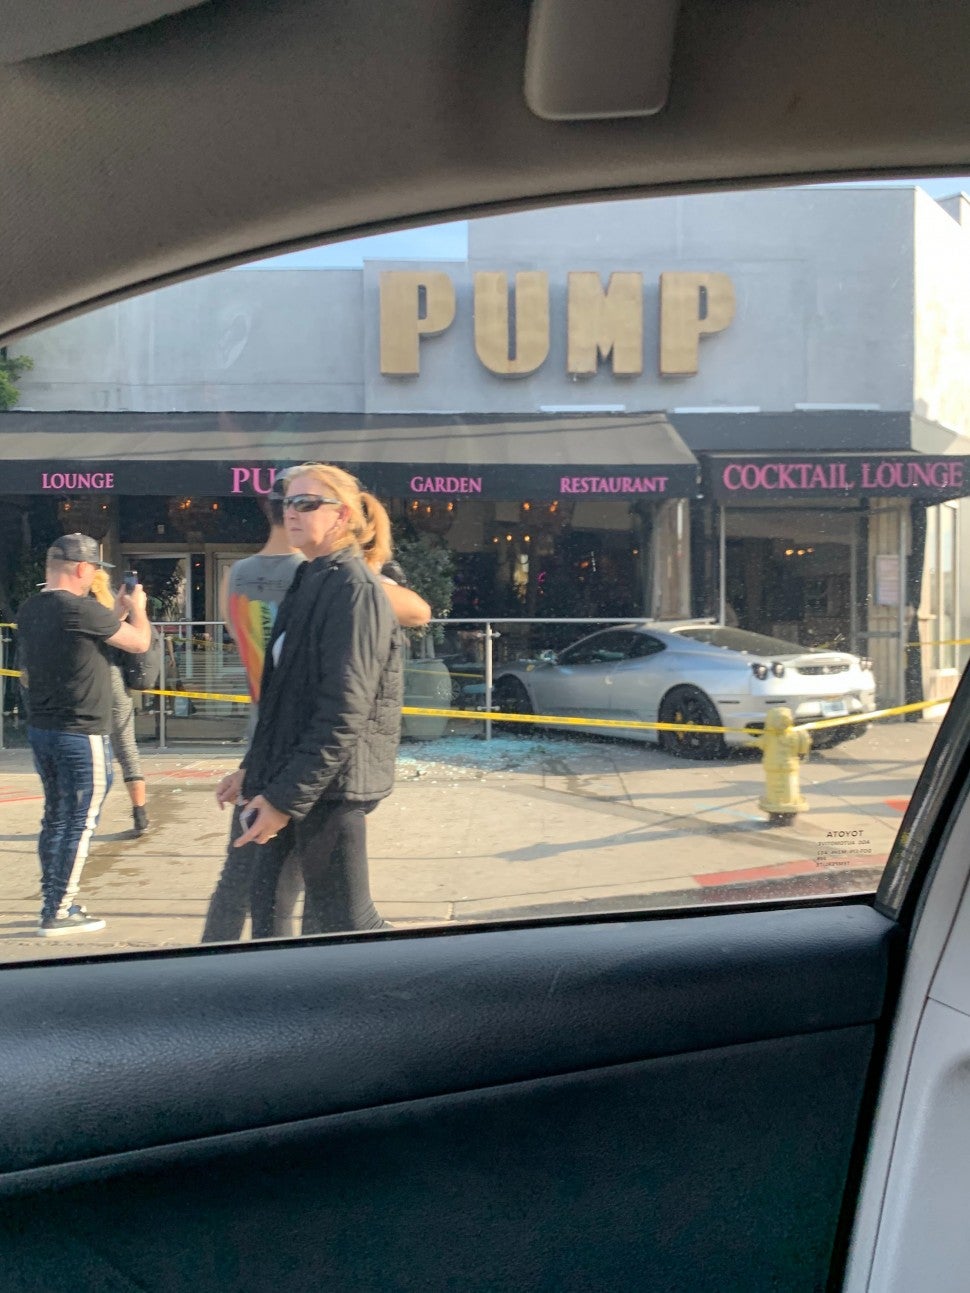 car crashes into Lisa Vanderpump's restaurant PUMP